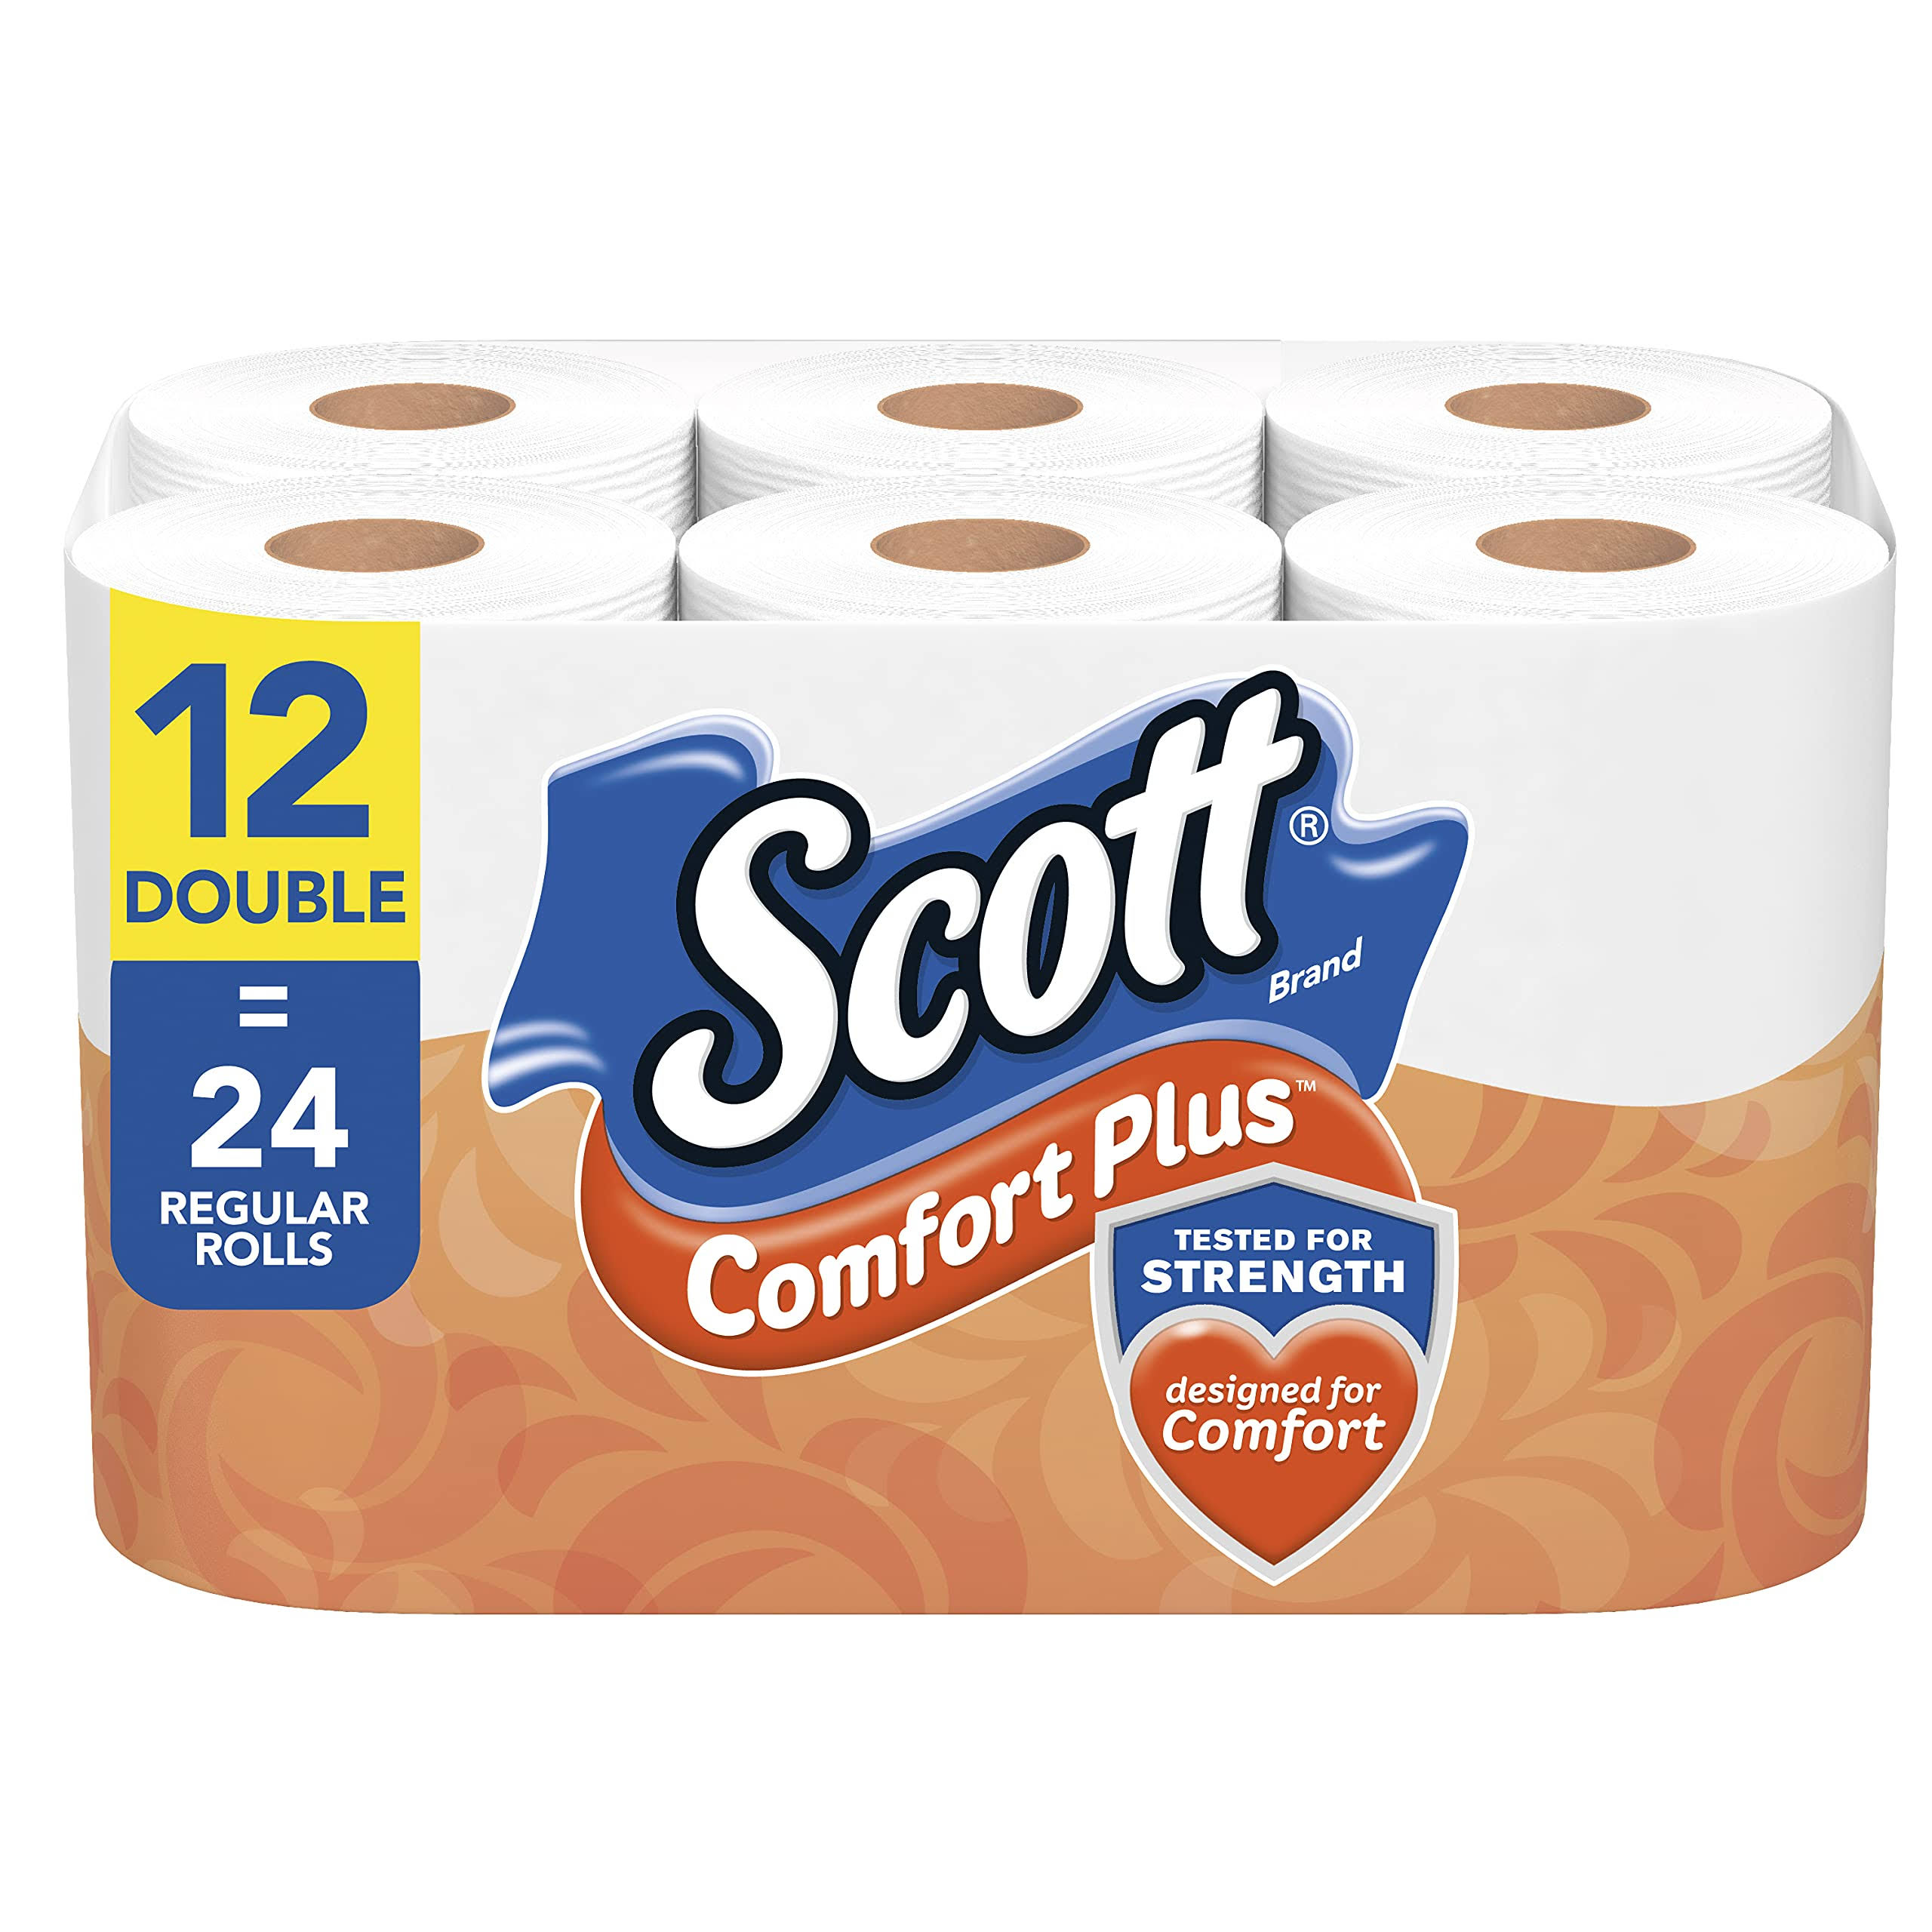 Scott ComfortPlus Toilet Paper, Double Rolls - 12 count